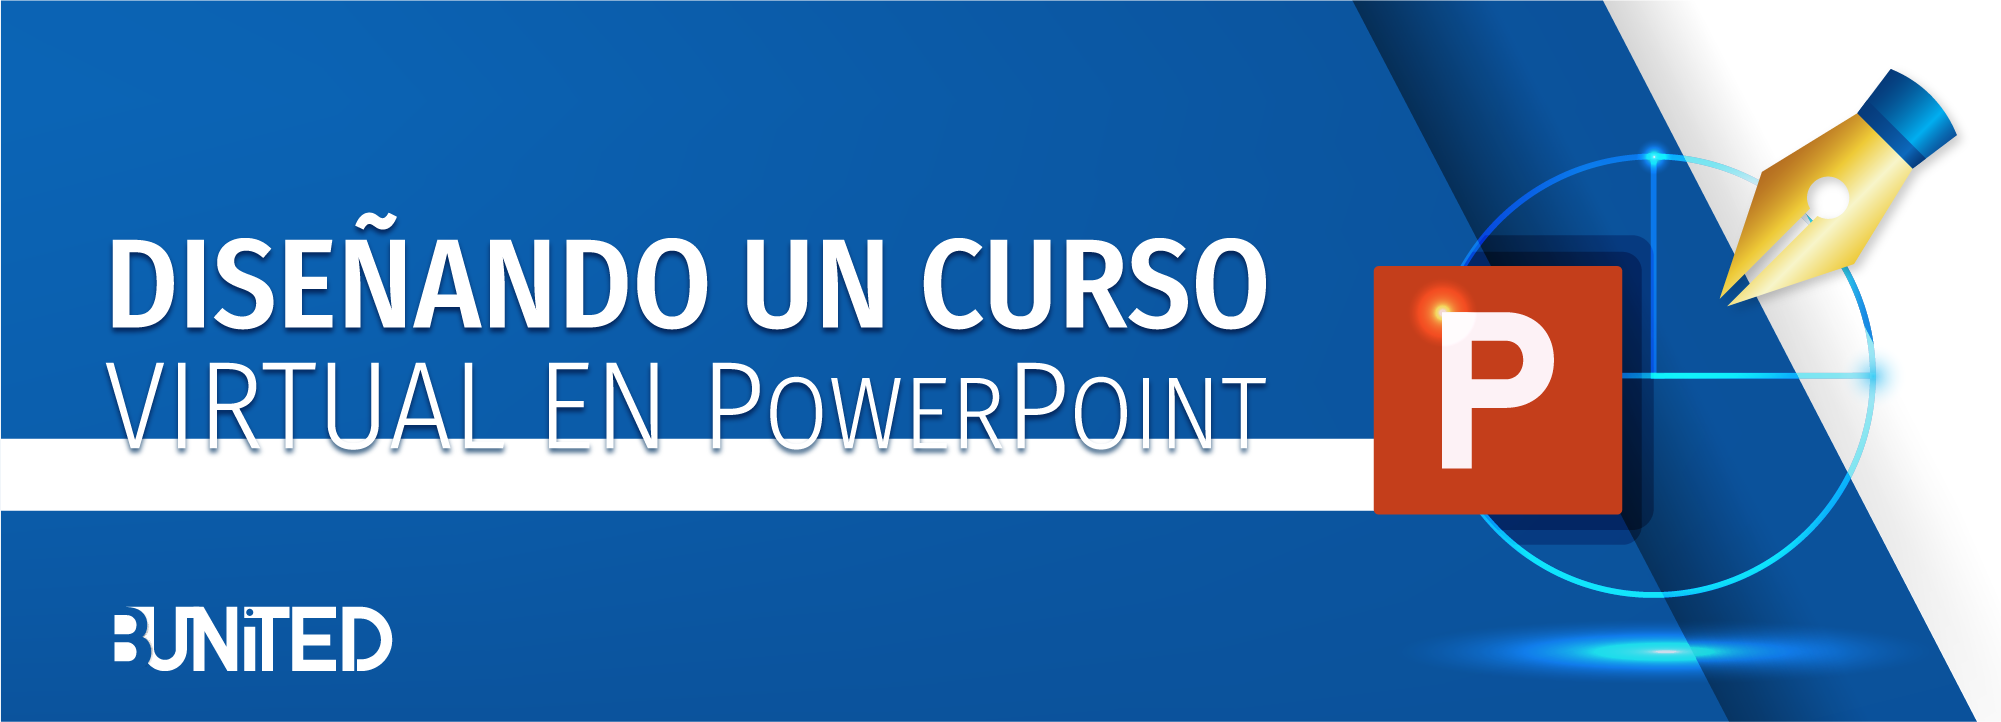 Diseñando un curso virtual en PowerPoint BU-0023